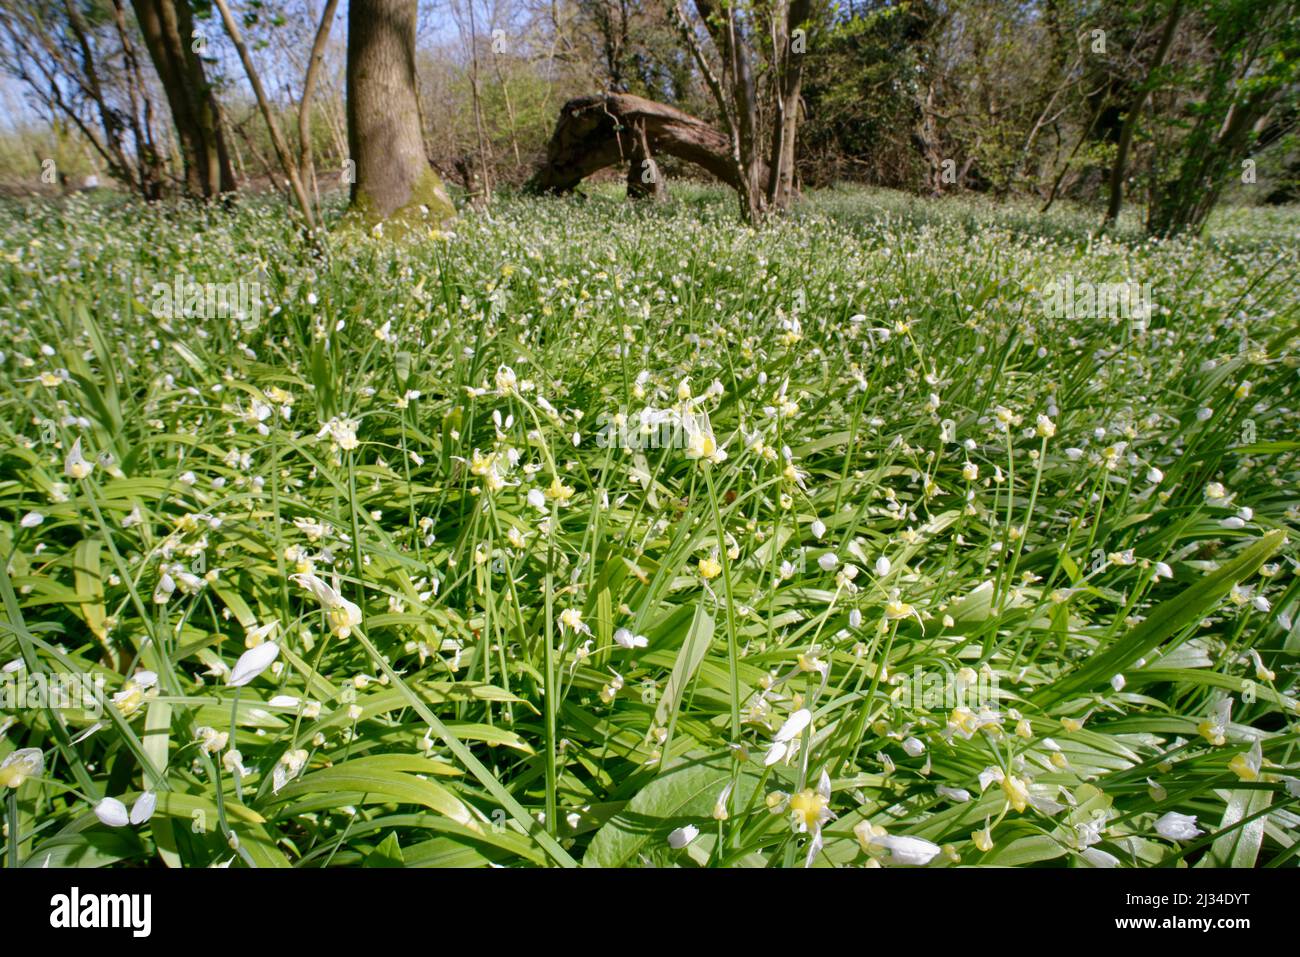 Leek a fiore ridotto (Allium paradoxum) una specie altamente invasiva, che cresce in un denso tappeto soffocante nel bosco, Claverton Down, Bath, UK, aprile. Foto Stock